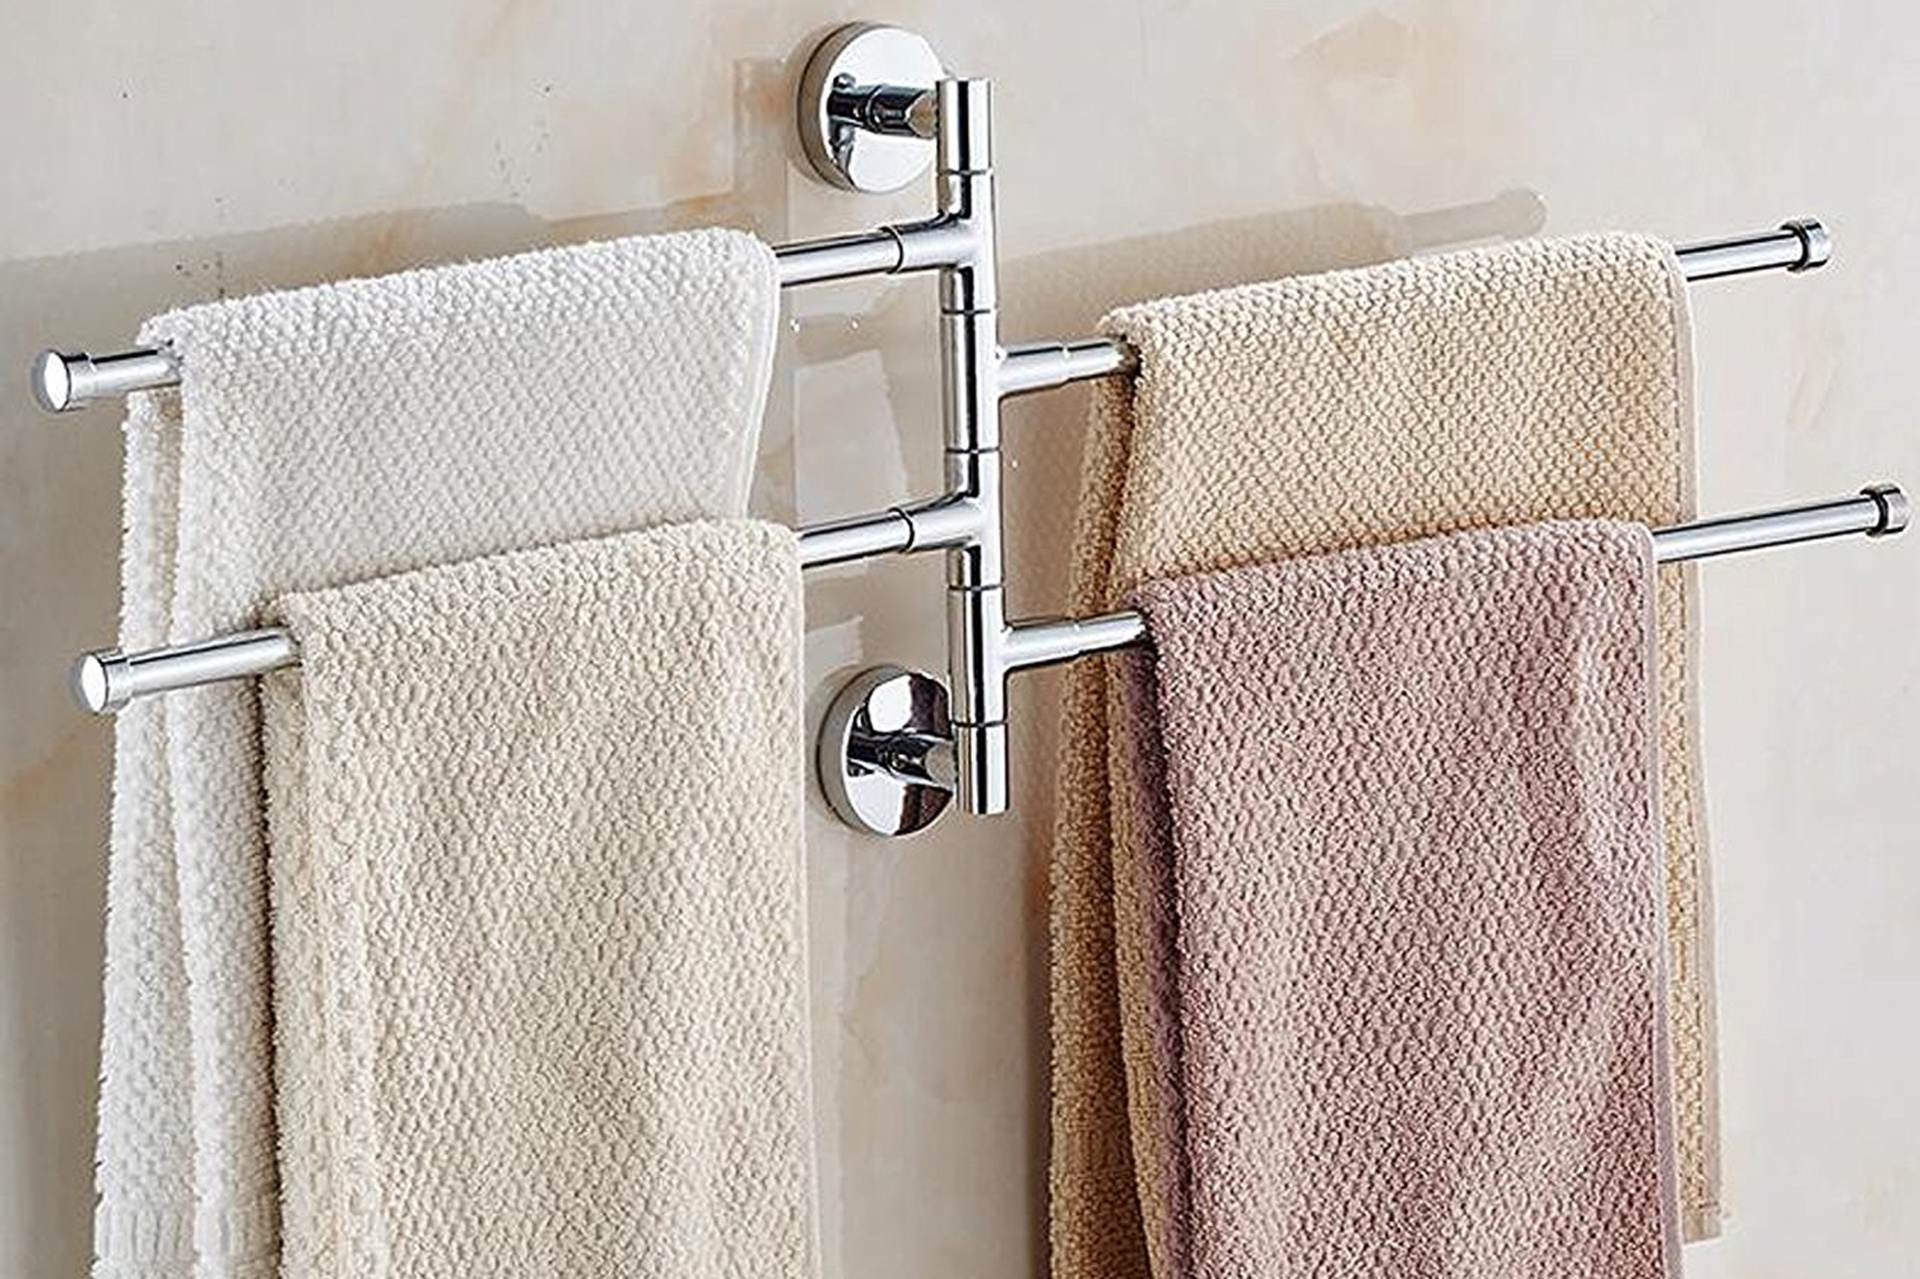 Как повесить полотенца в ванне. YLT 0313а сушилка Towel Rack. Полотенцедержатели для ванной комнаты. Полотенца в ванной. Кронштейн для полотенец.